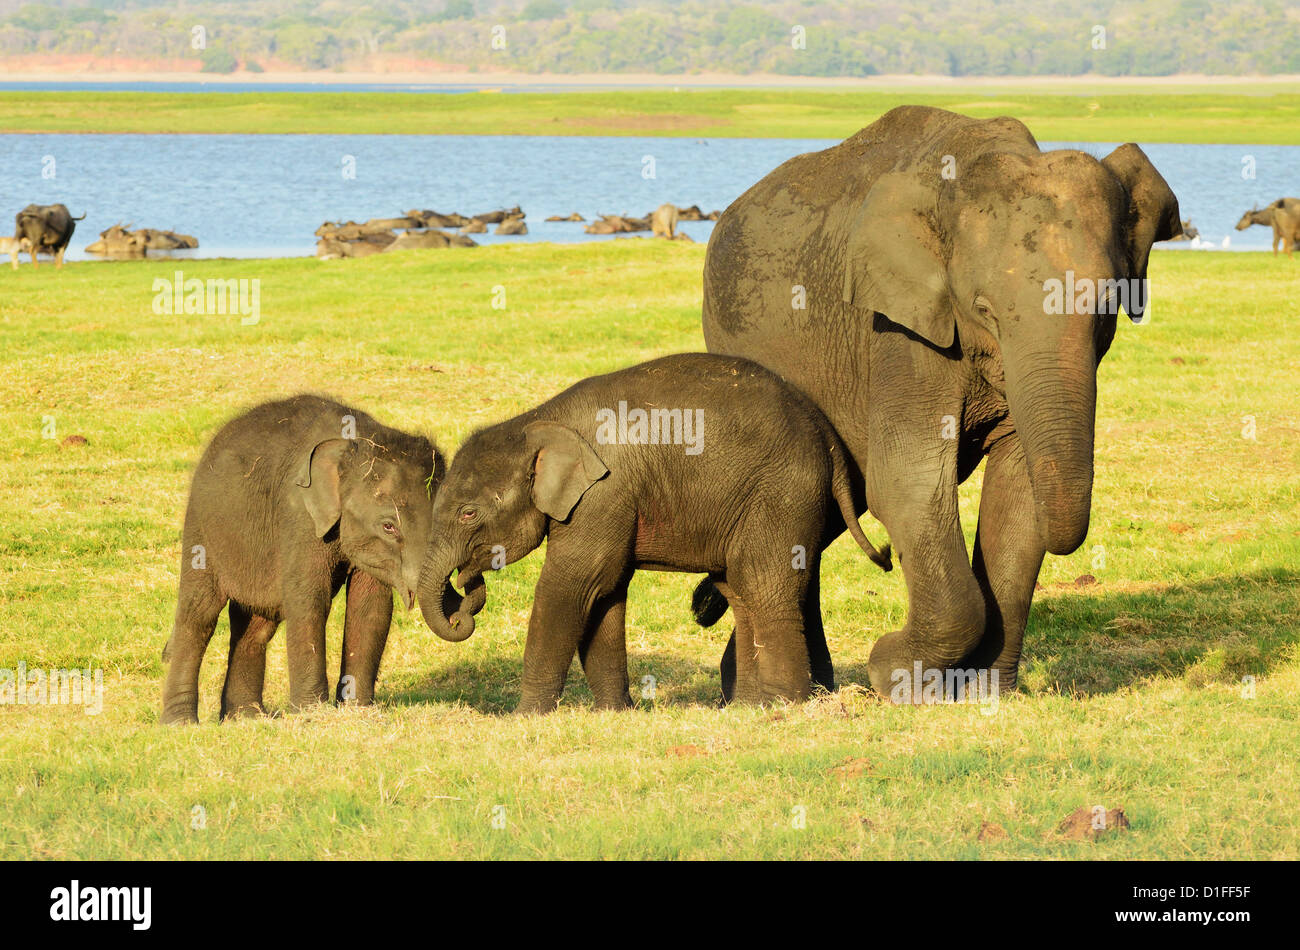 Sri Lankan elephant (Elephas maximus maximus), Minneriya National Park, Sri Lanka, Asia Stock Photo